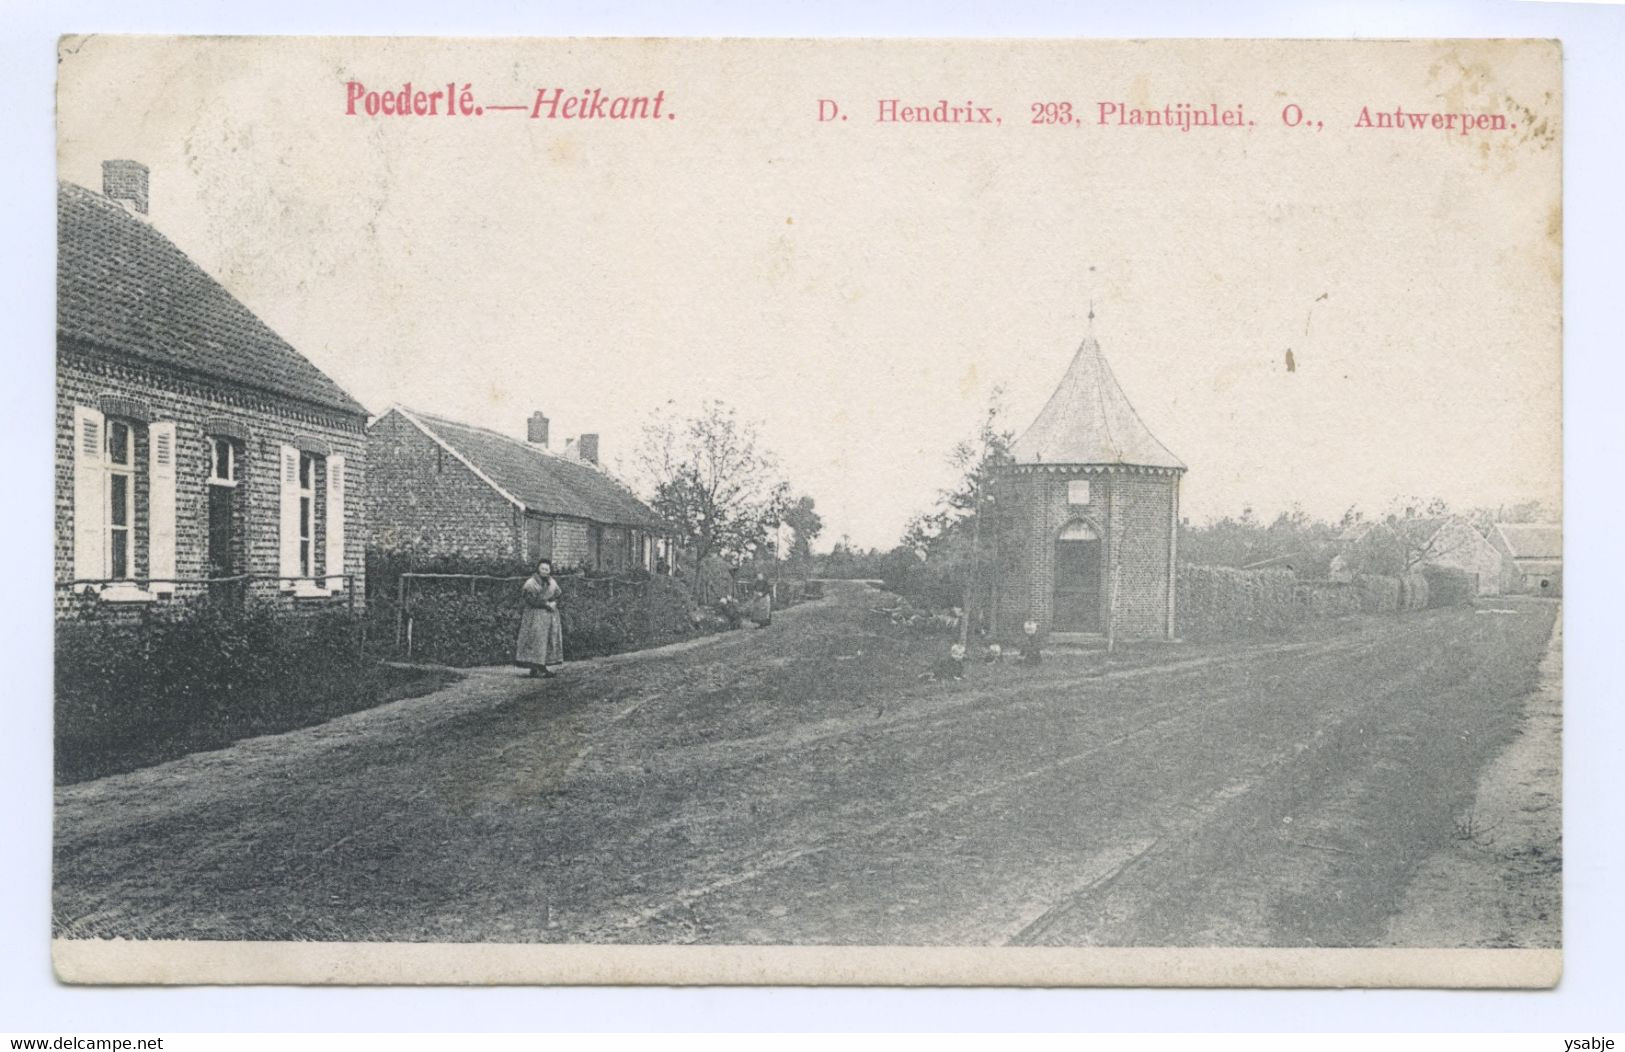 Poederlé - Poederlee: Heikant - Lille